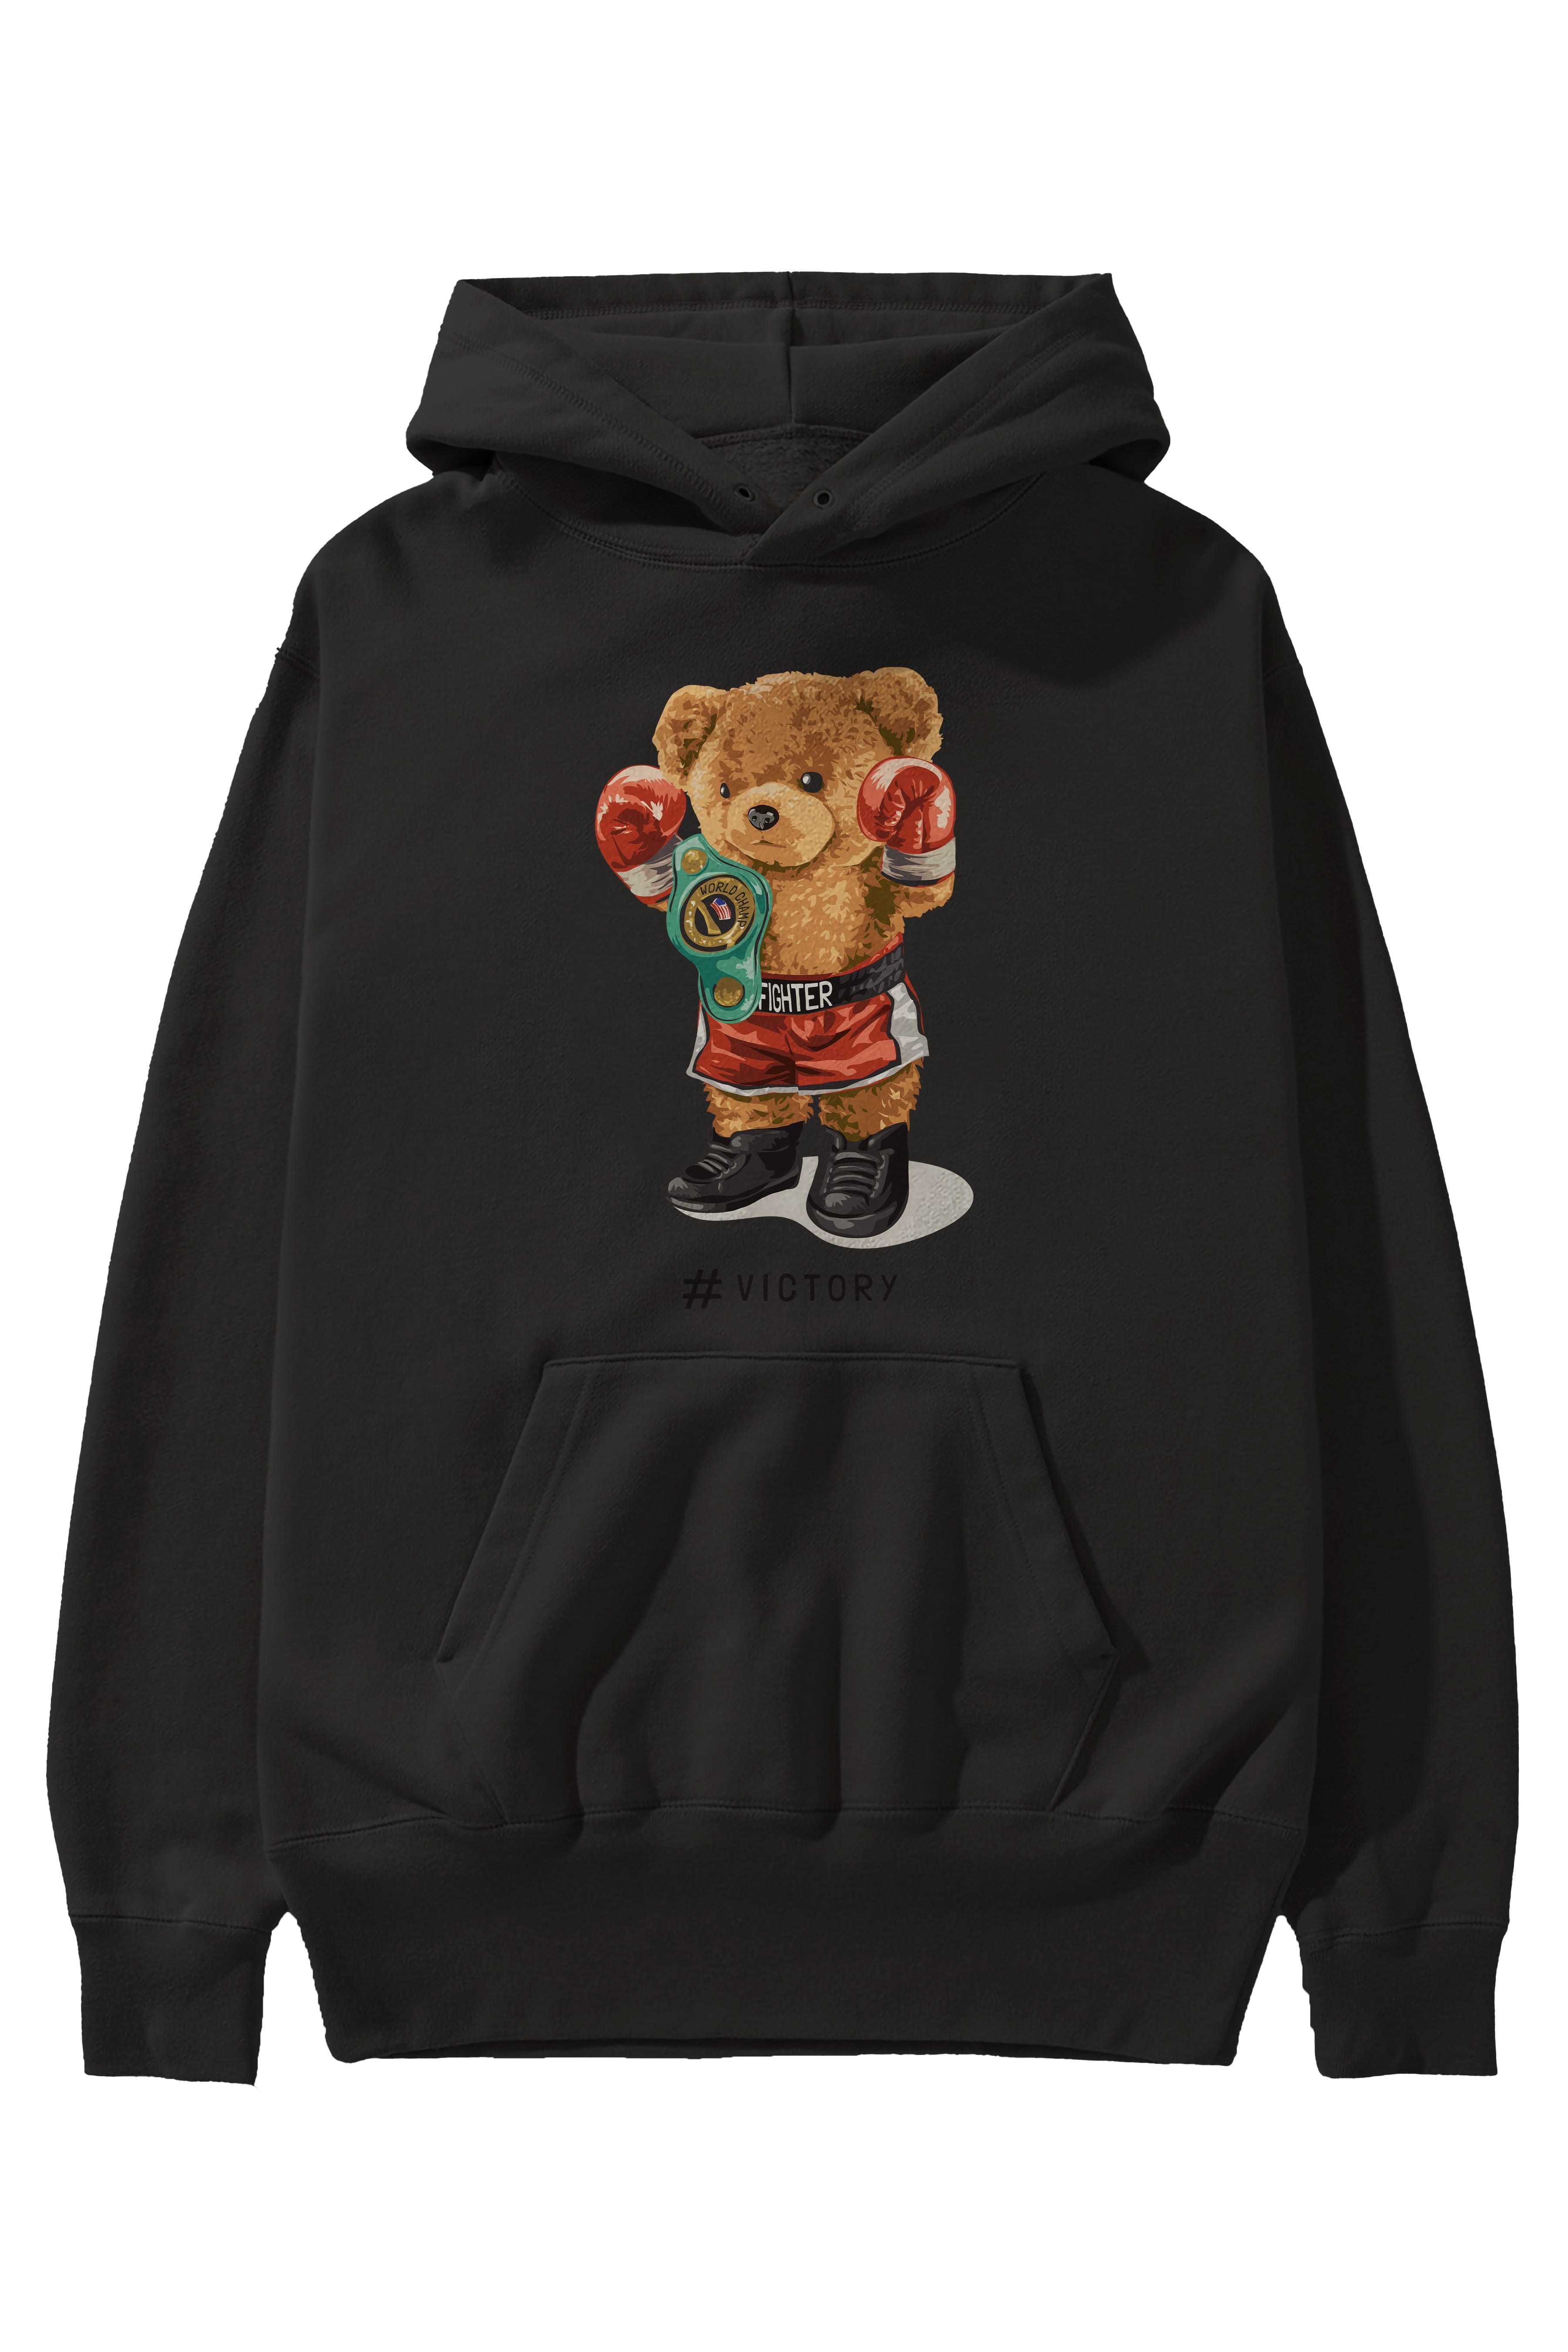 Teddy Bear Victory Ön Baskılı Hoodie Oversize Kapüşonlu Sweatshirt Erkek Kadın Unisex